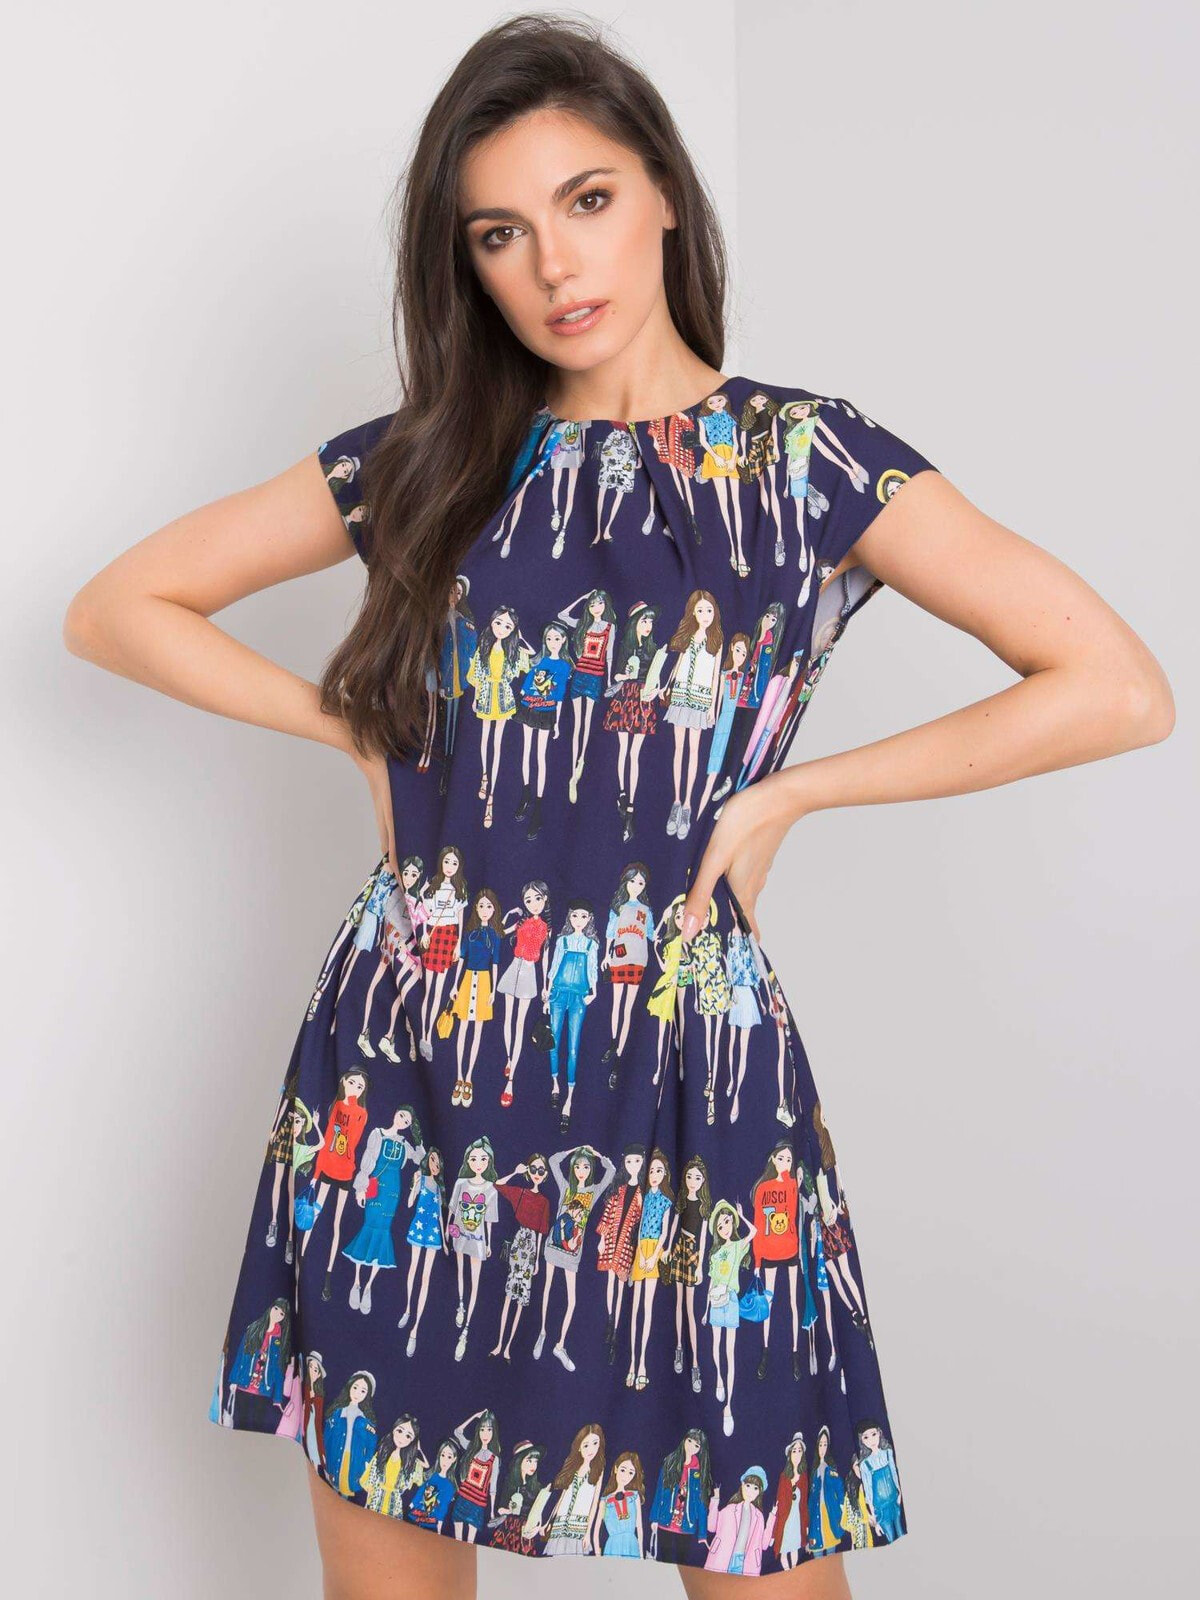 Женское летнее платье с модным принтом Factory Price